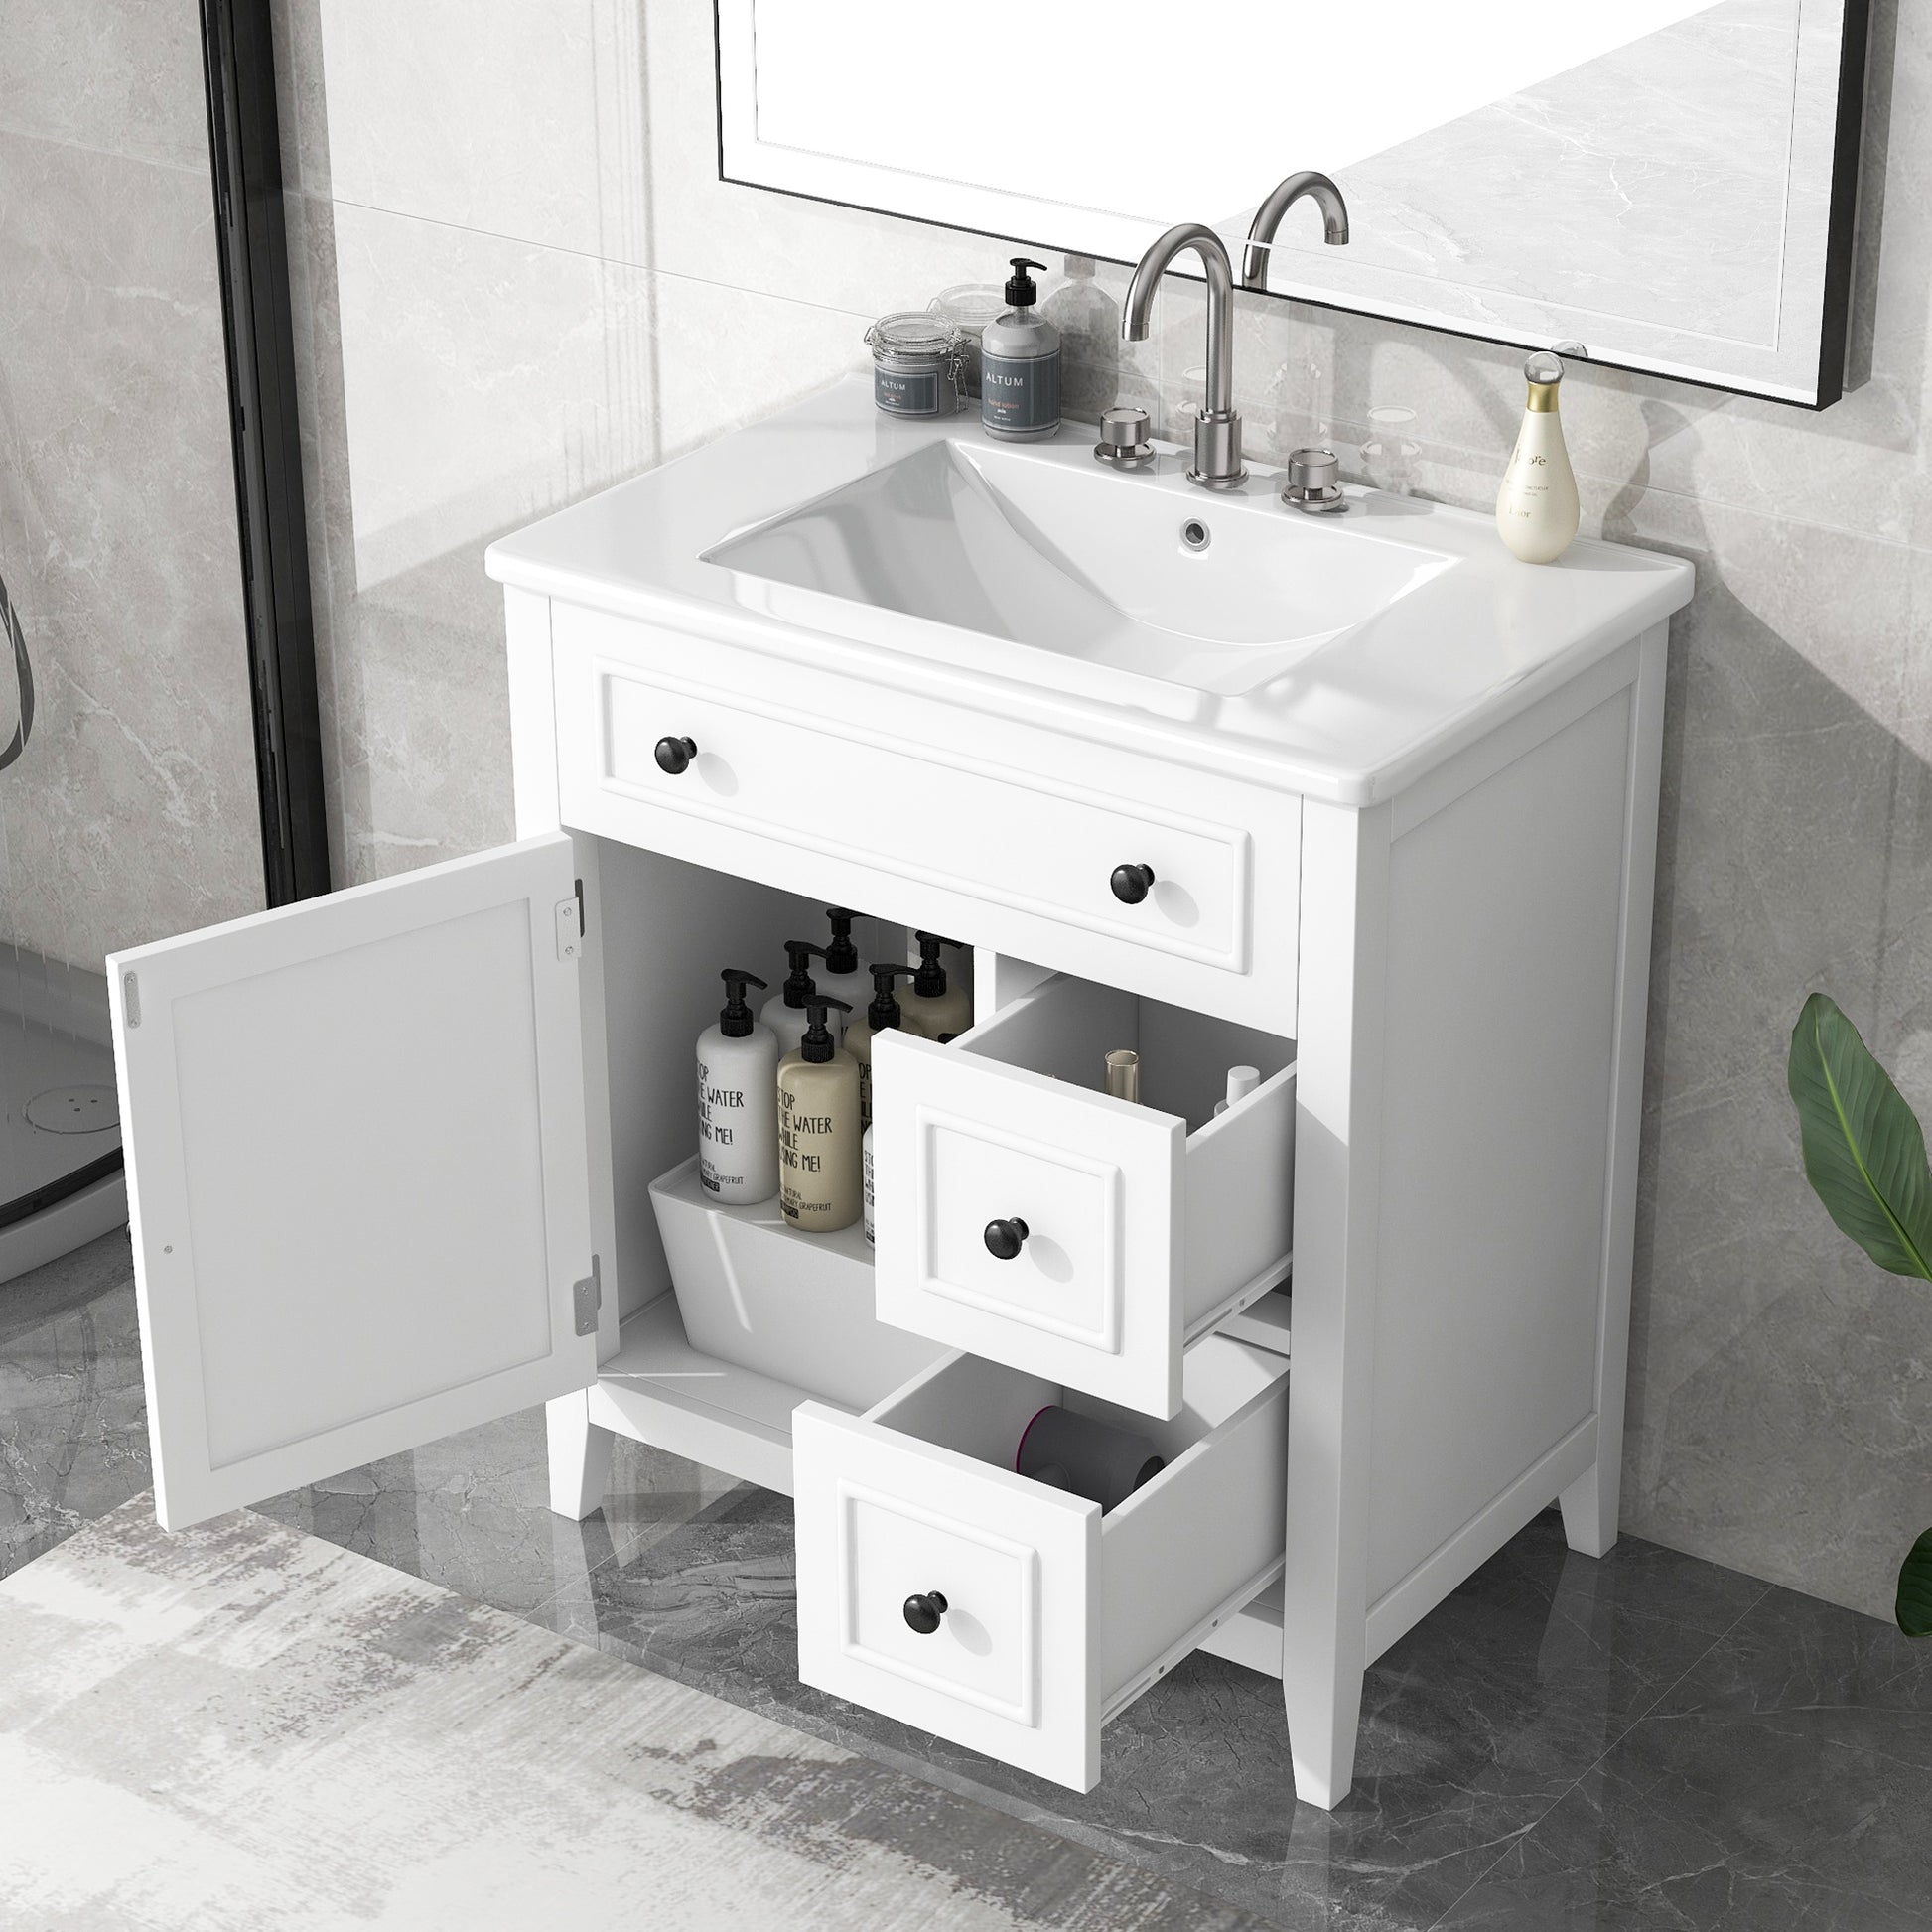 30" Bathroom Vanity With Sink Top, Bathroom